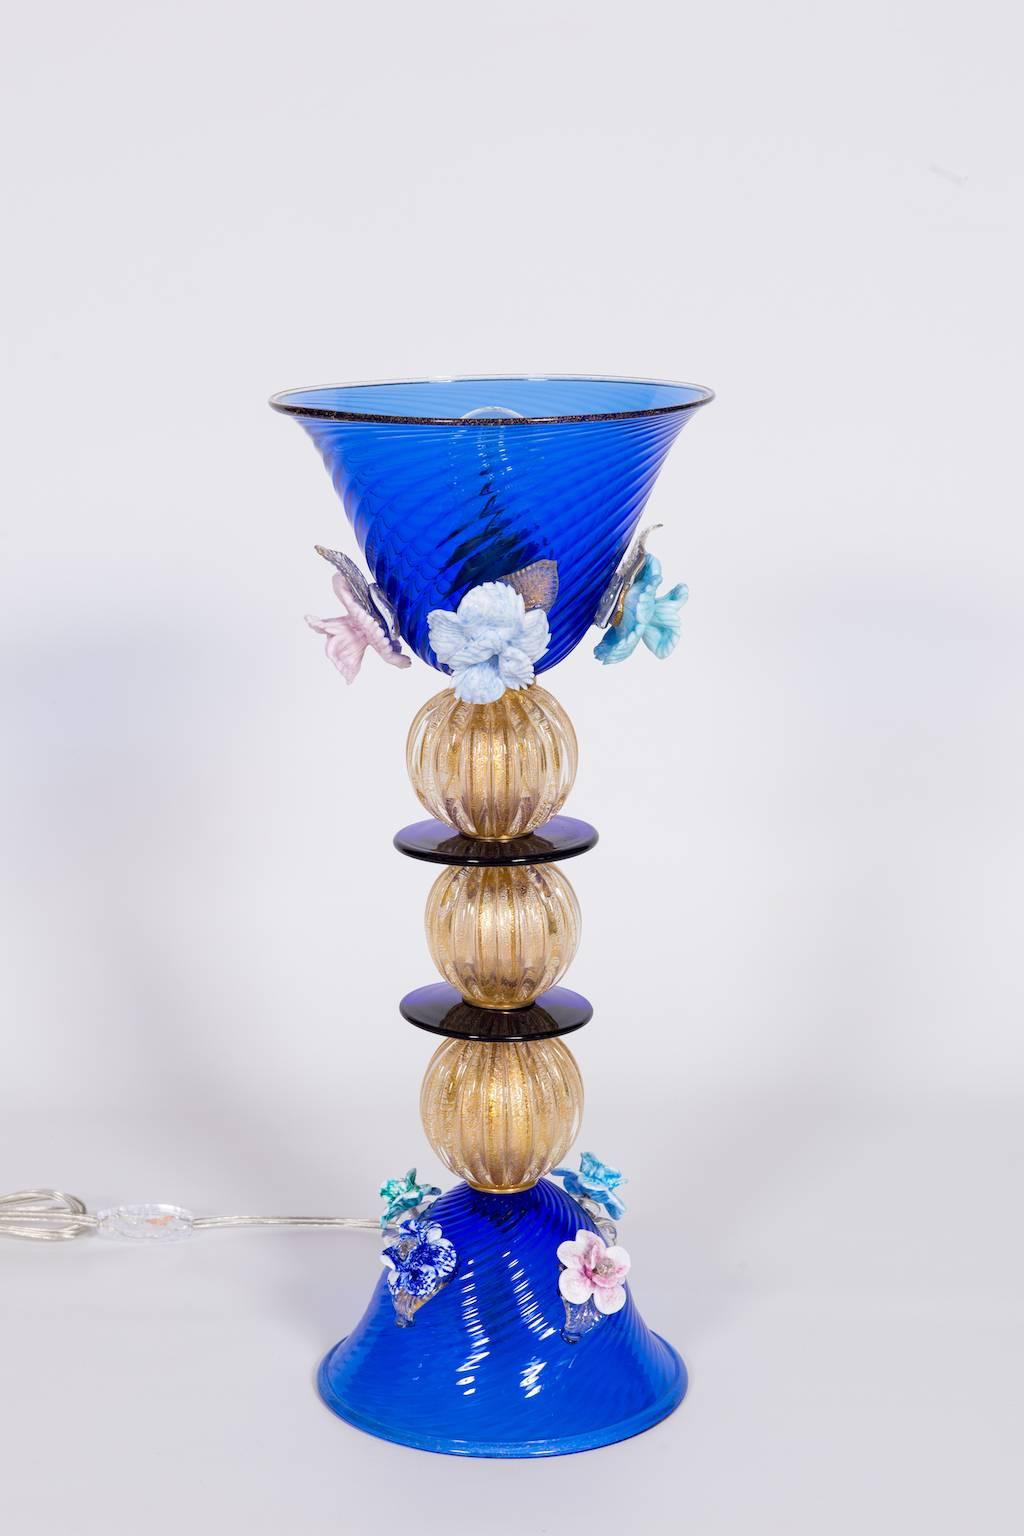 Lampe de table italienne en verre de Murano bleu et or 24 carats et multicolore, composée d'une base bleue avec quatre fleurs, au-dessus de trois sphères en or 24 carats divisées par des disques circulaires bleus, au-dessus d'une coupe avec quatre